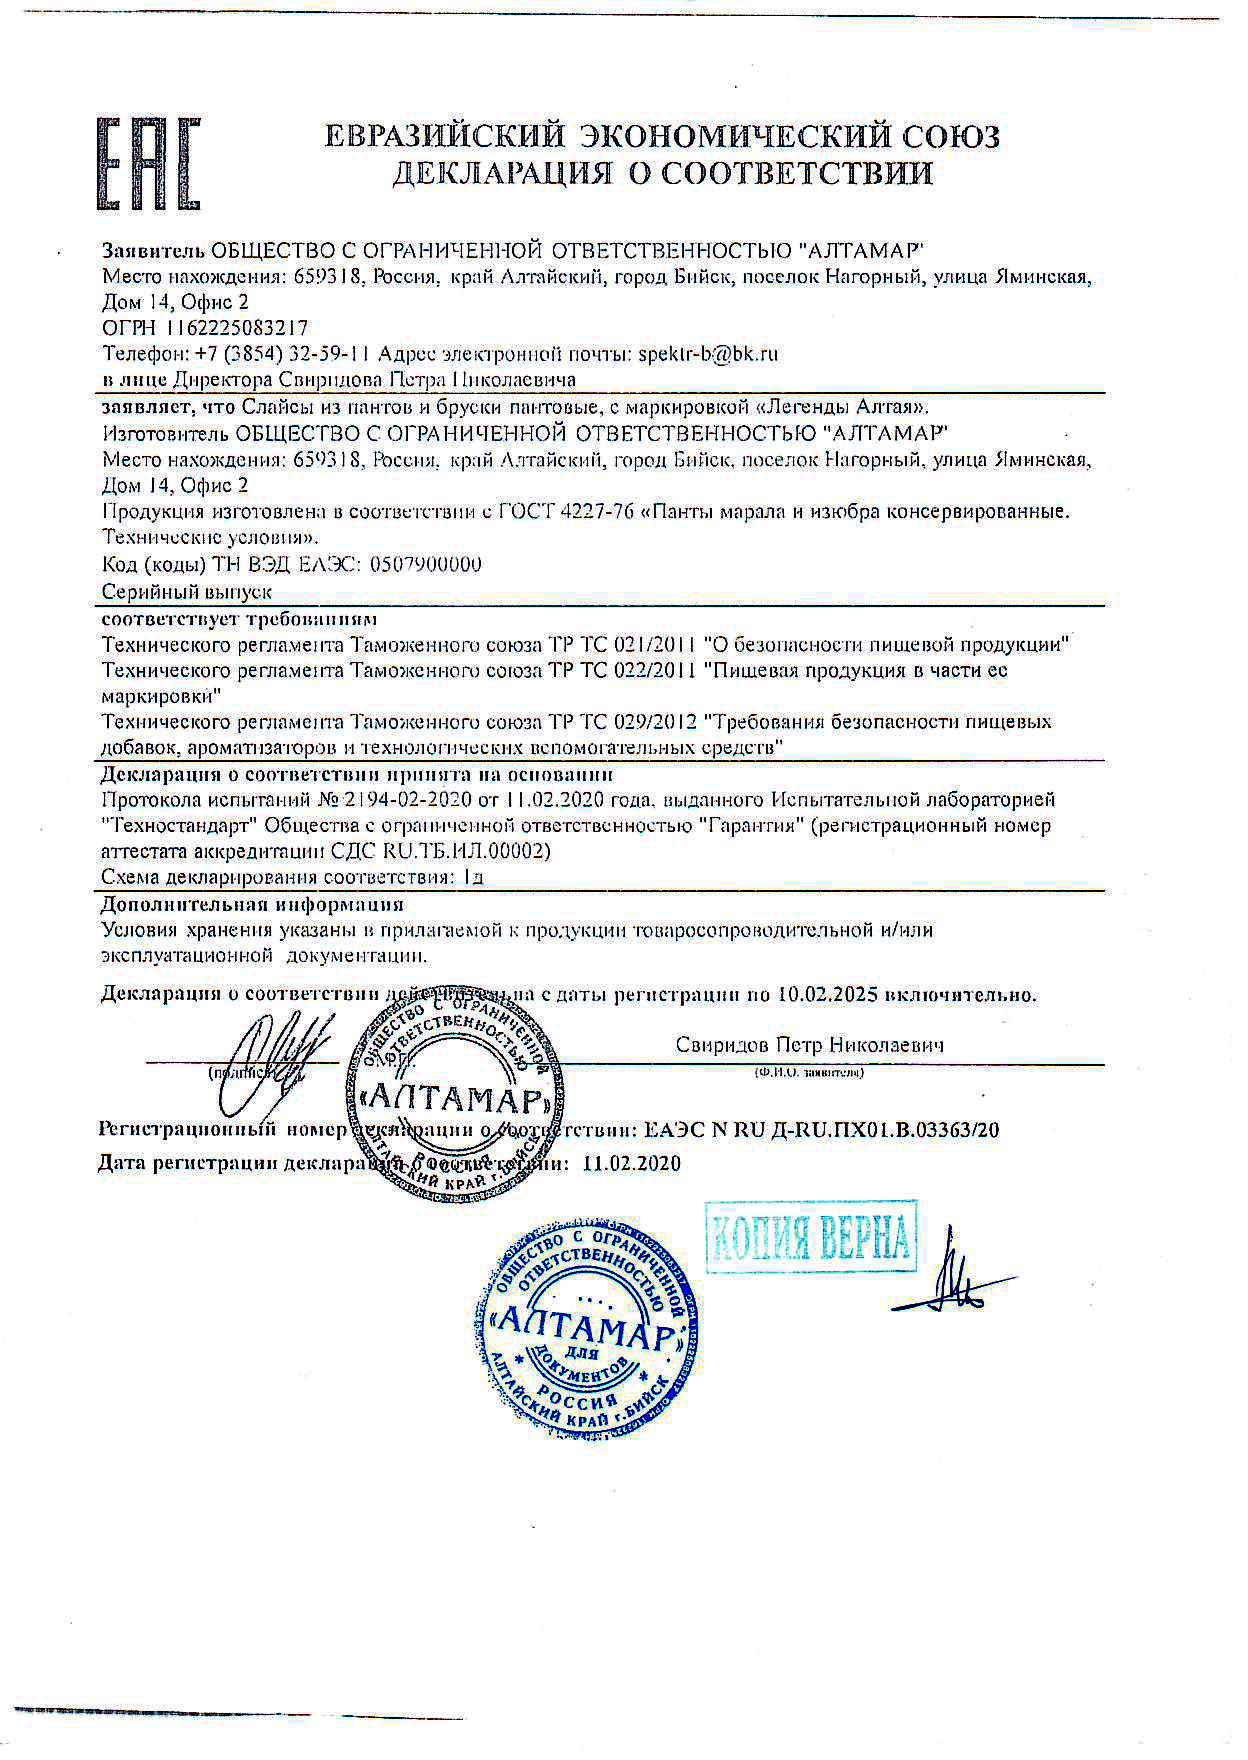 Сертификат на слайсы из пантов Алтамар